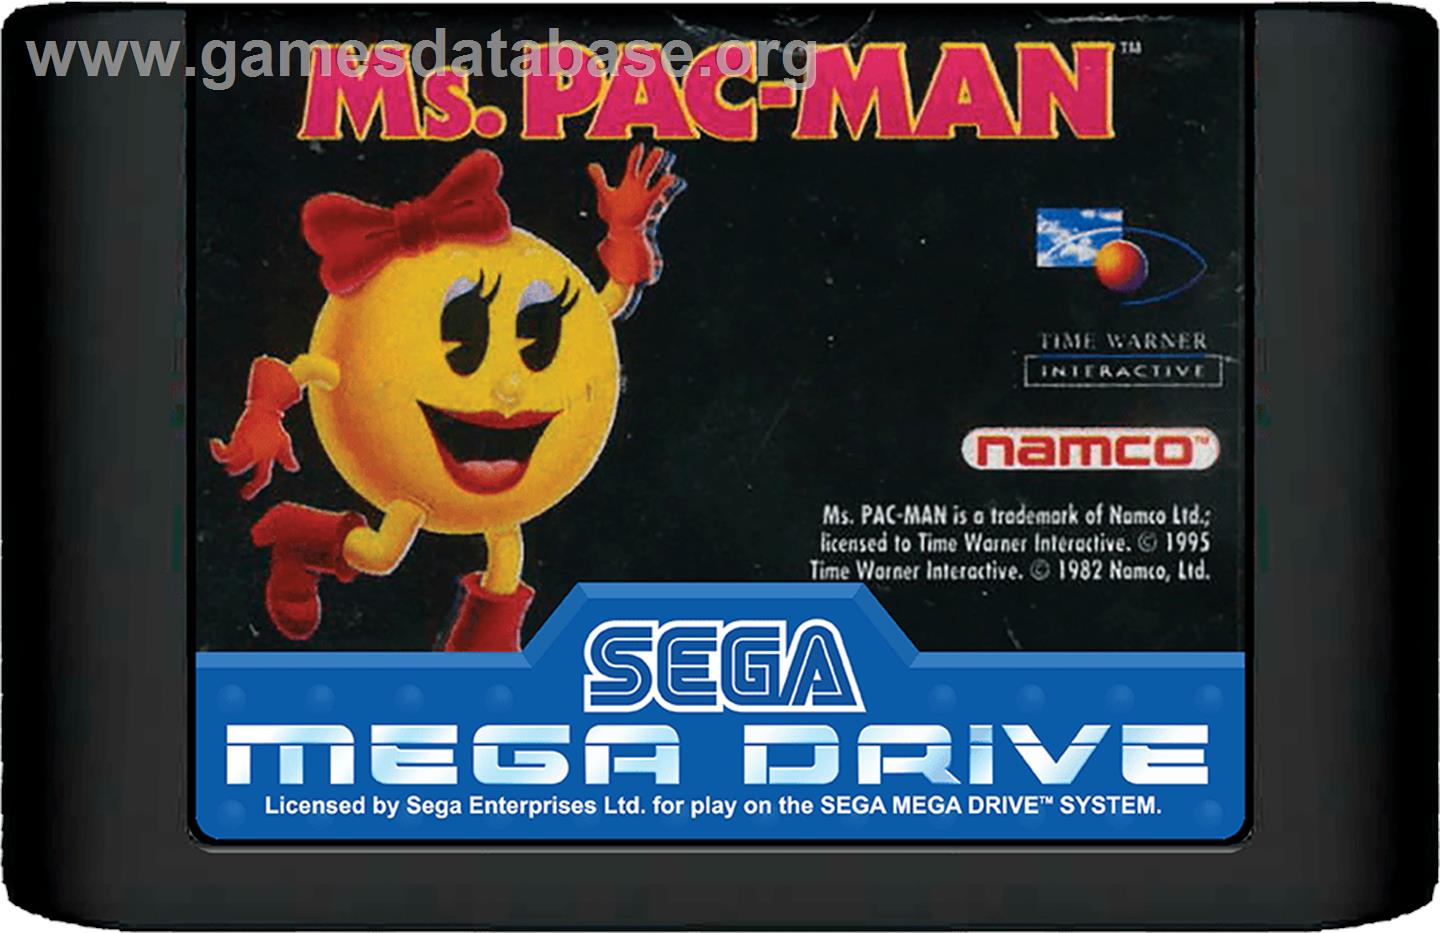 Ms. Pac-Man - Sega Genesis - Artwork - Cartridge